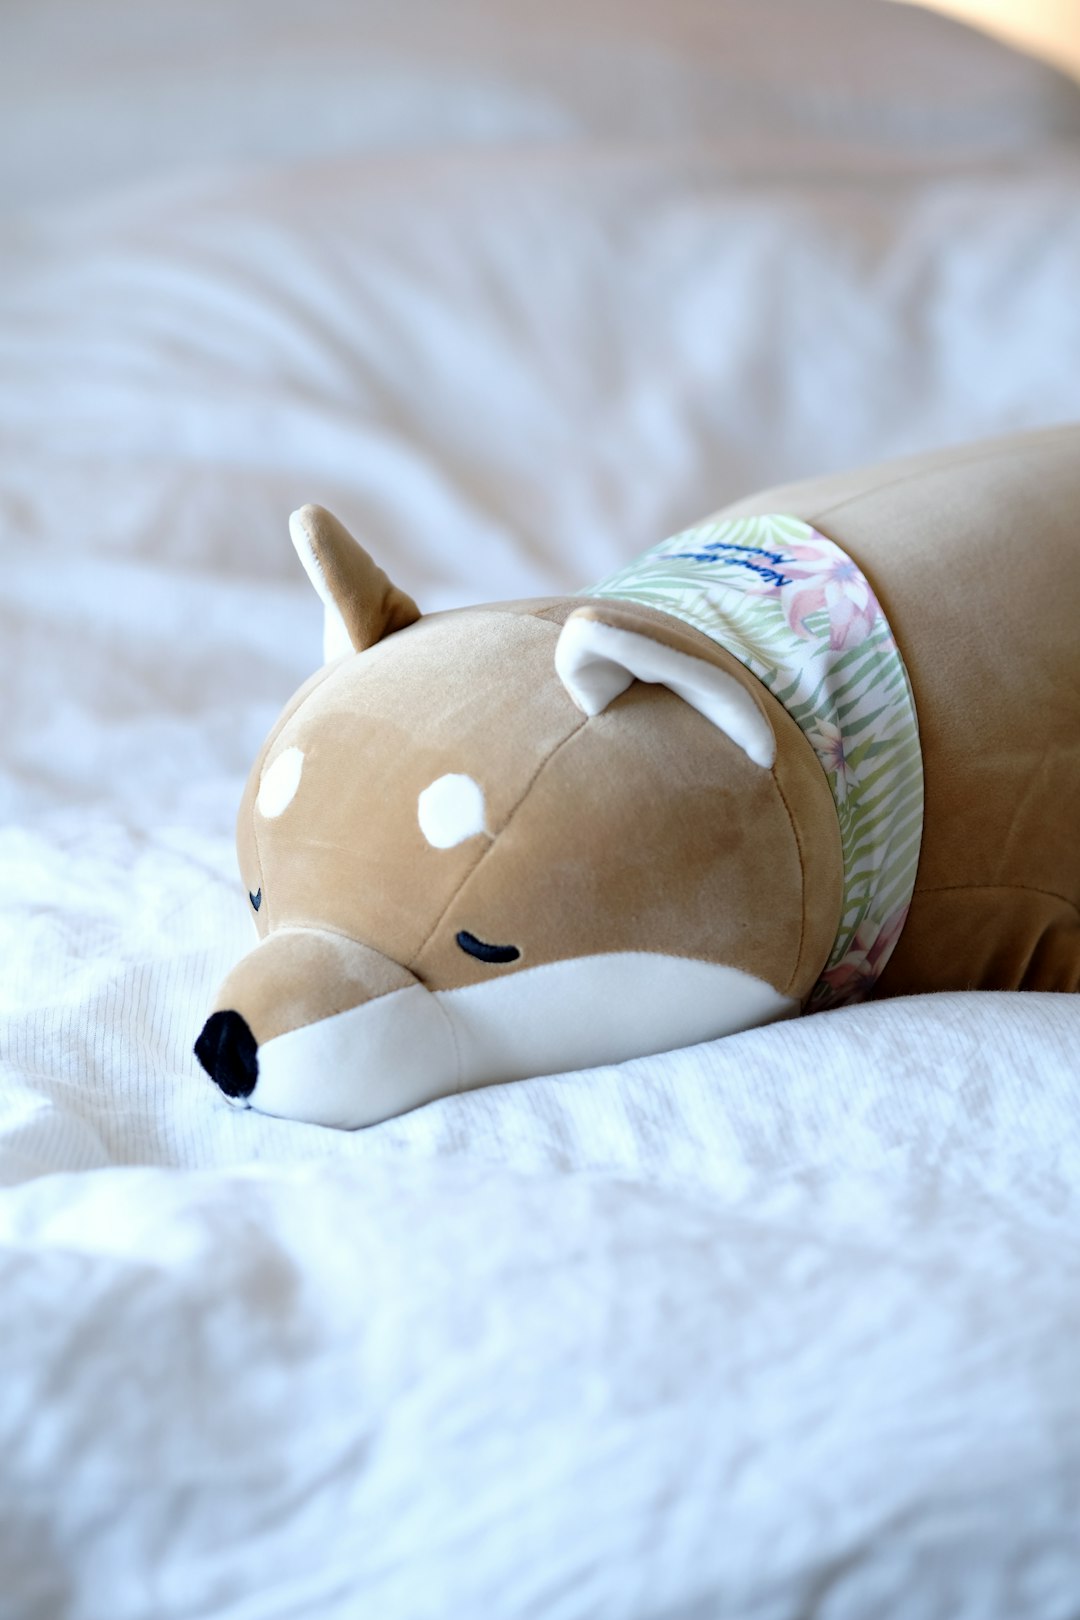 brown and white dog plush toy on white textile